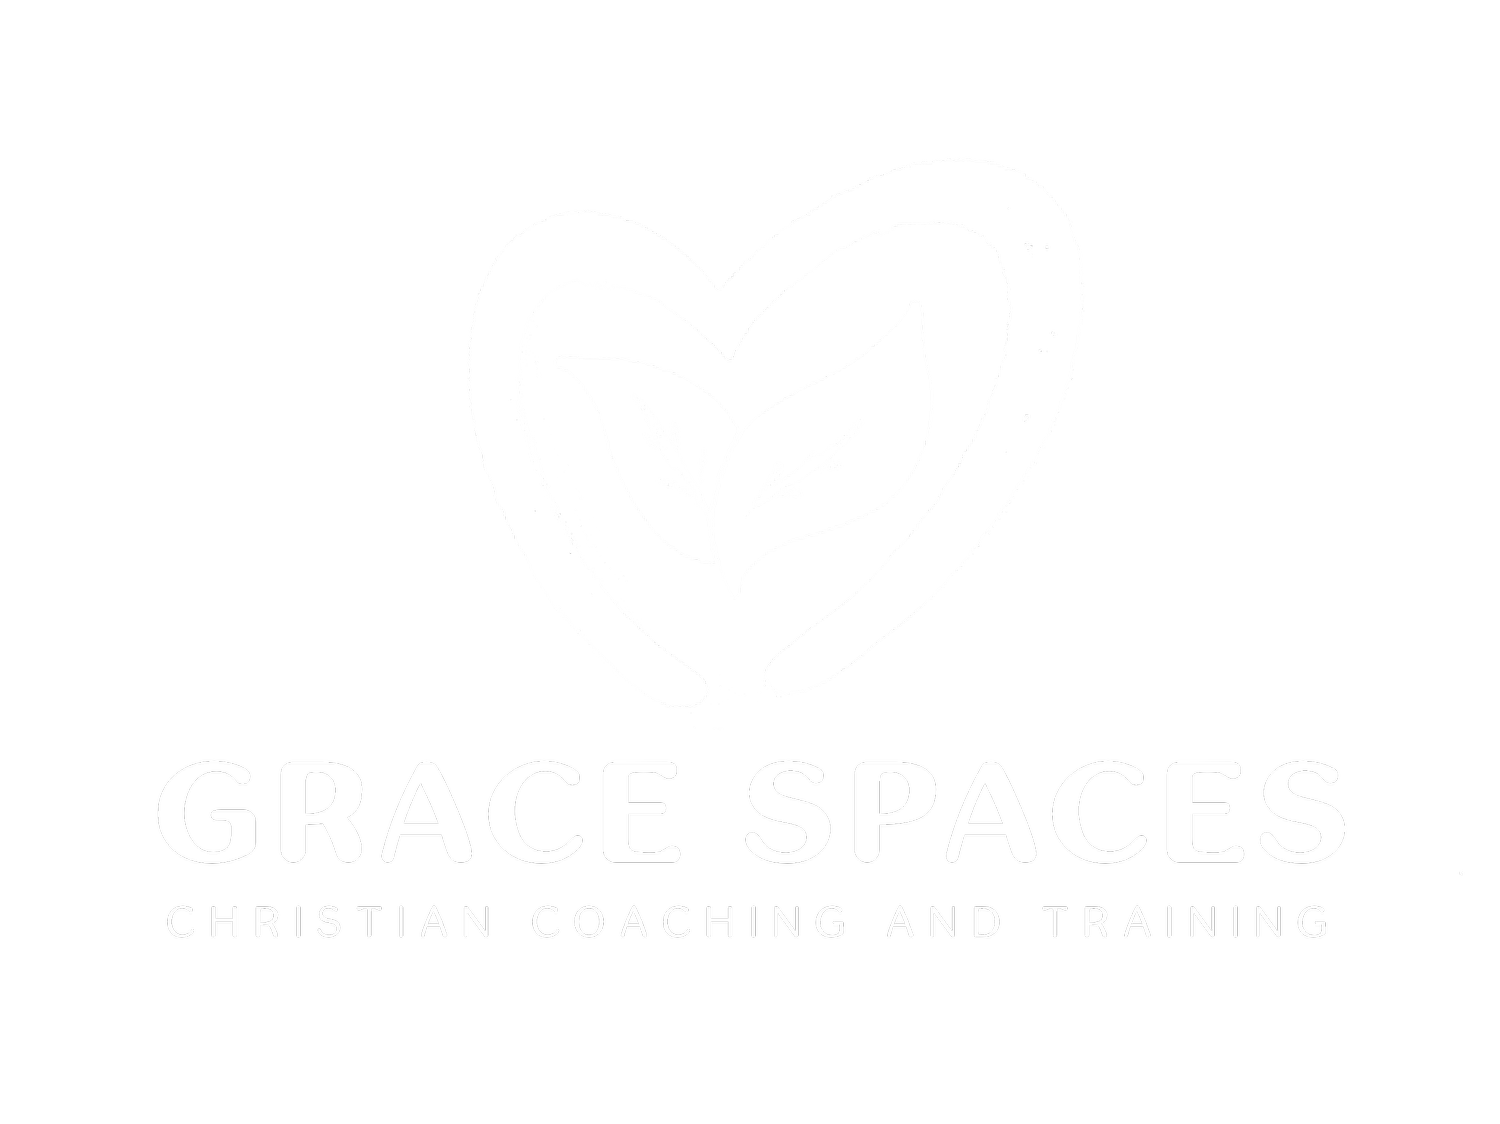 GraceSpaces.org